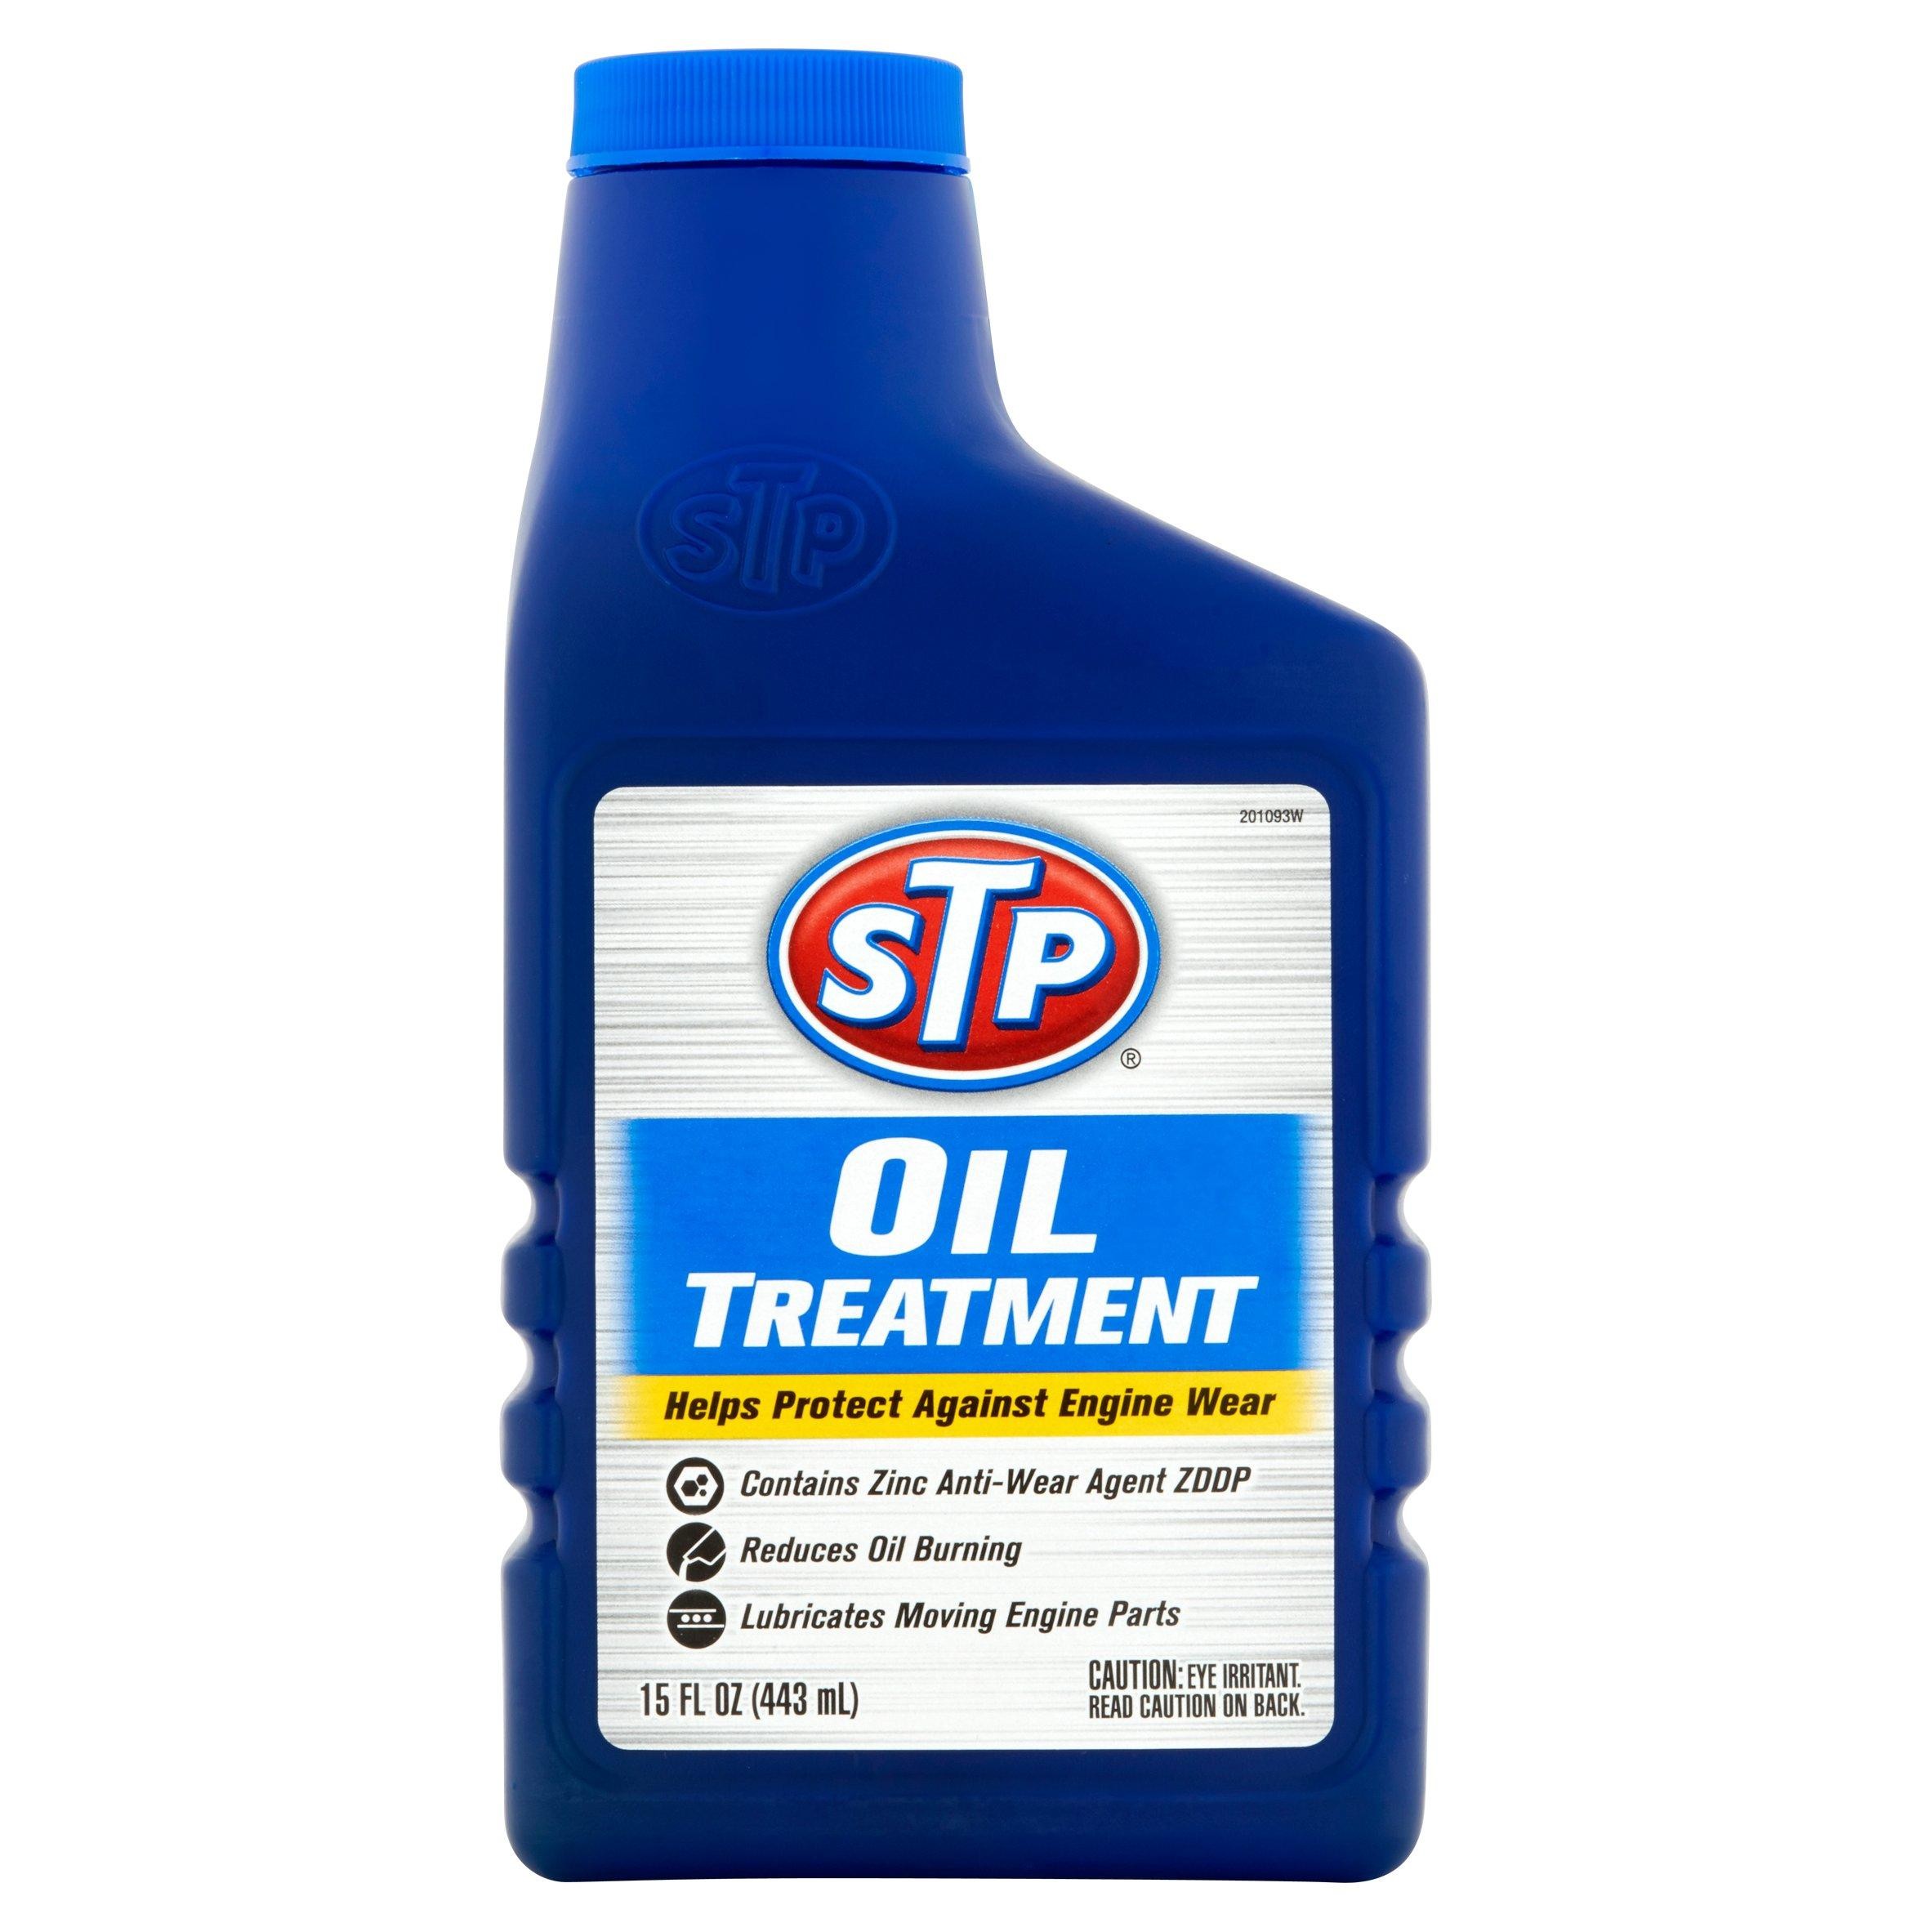 STP Oil Treatment 15.73 Oz